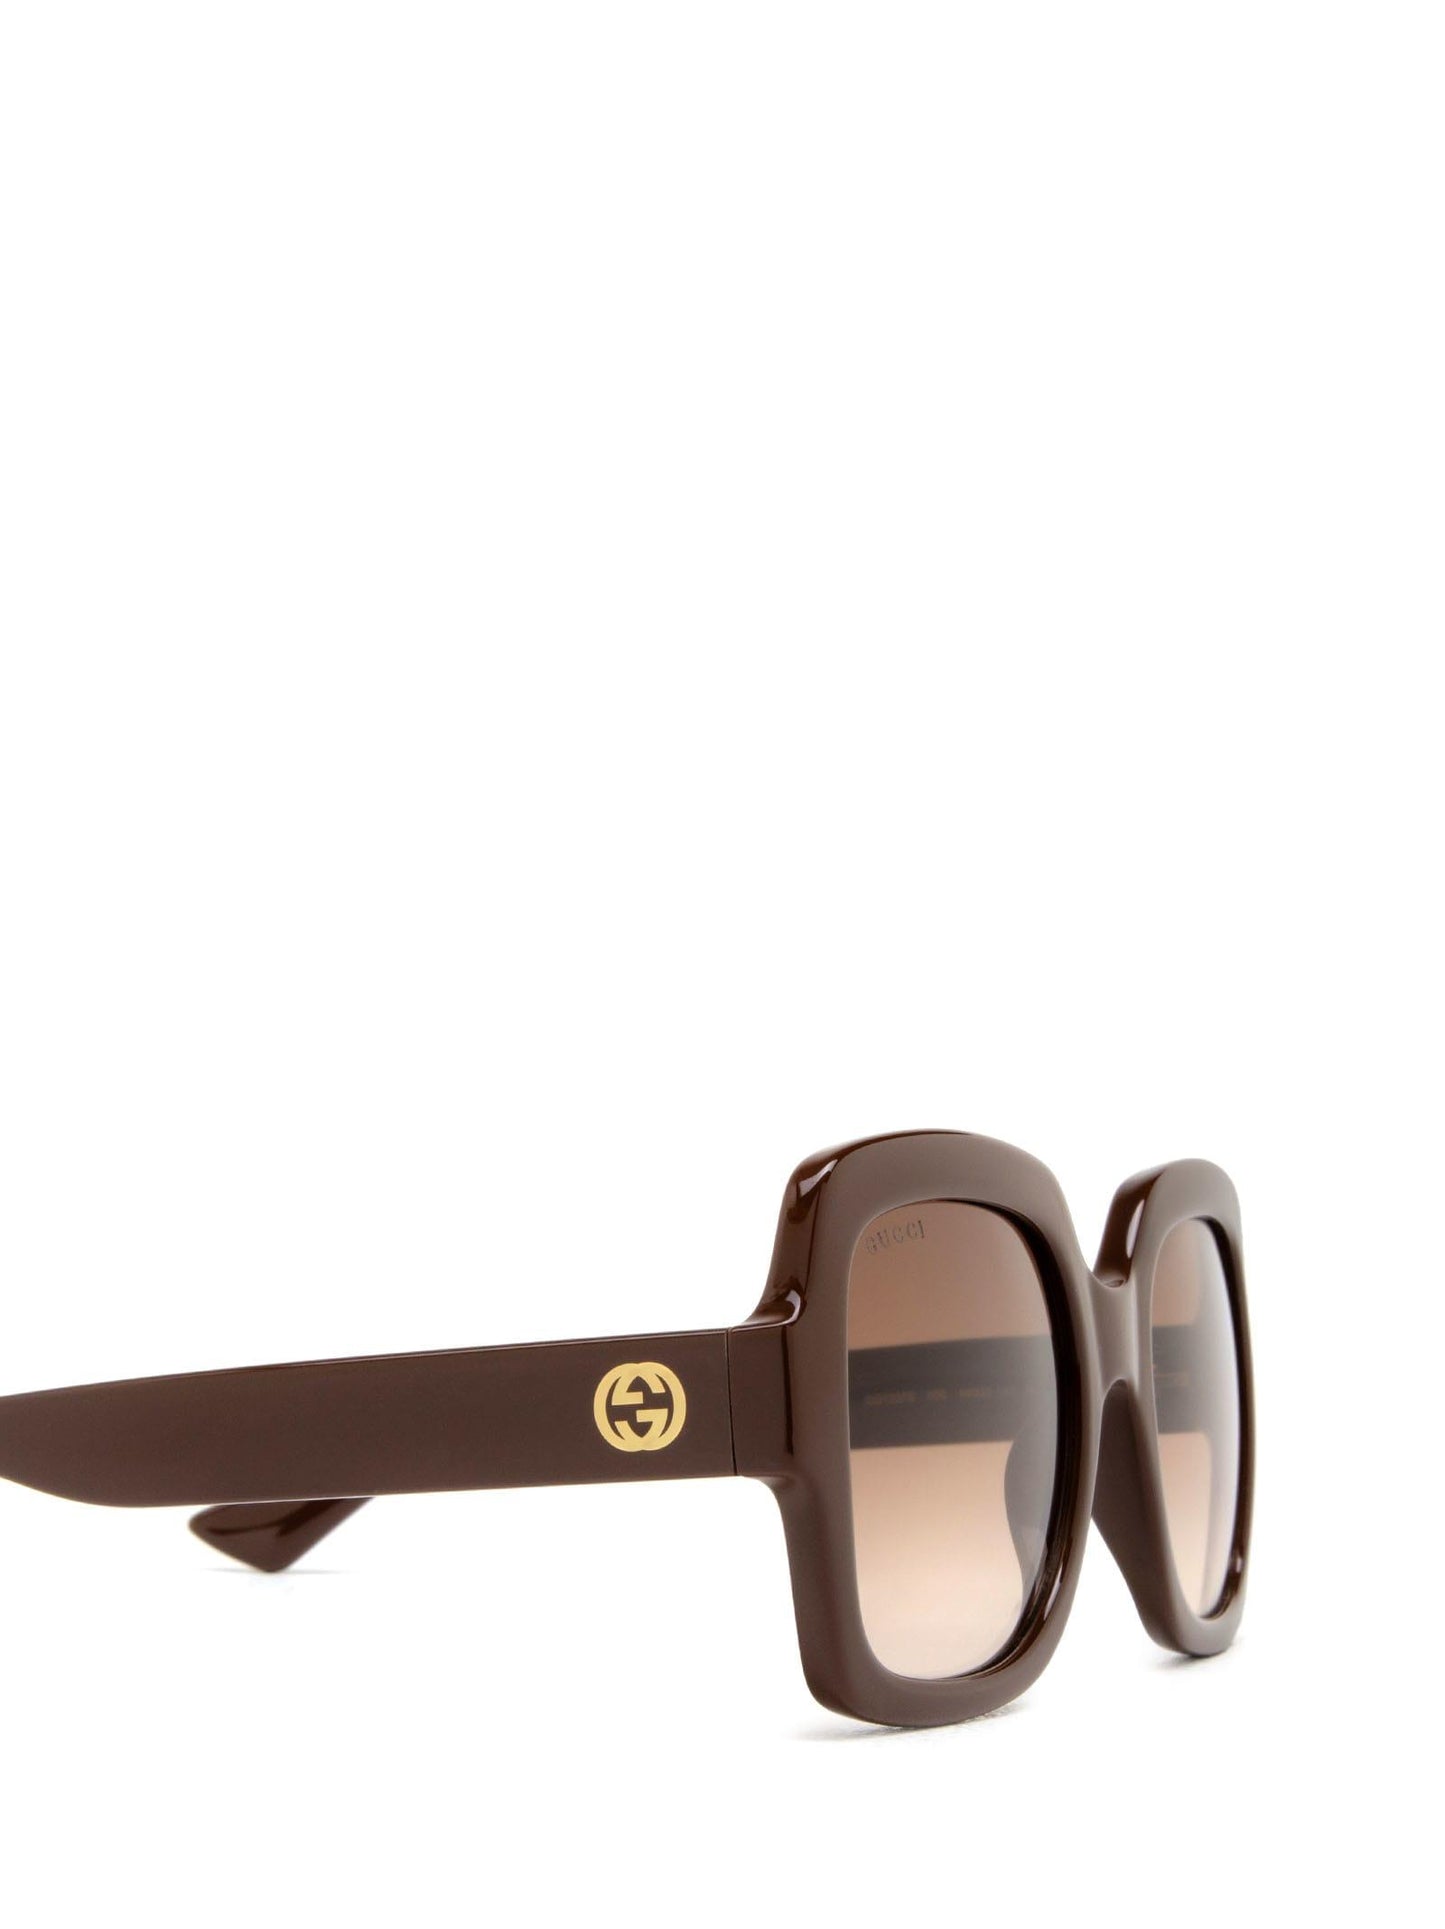 Gucci GG1337S-006 54mm New Sunglasses